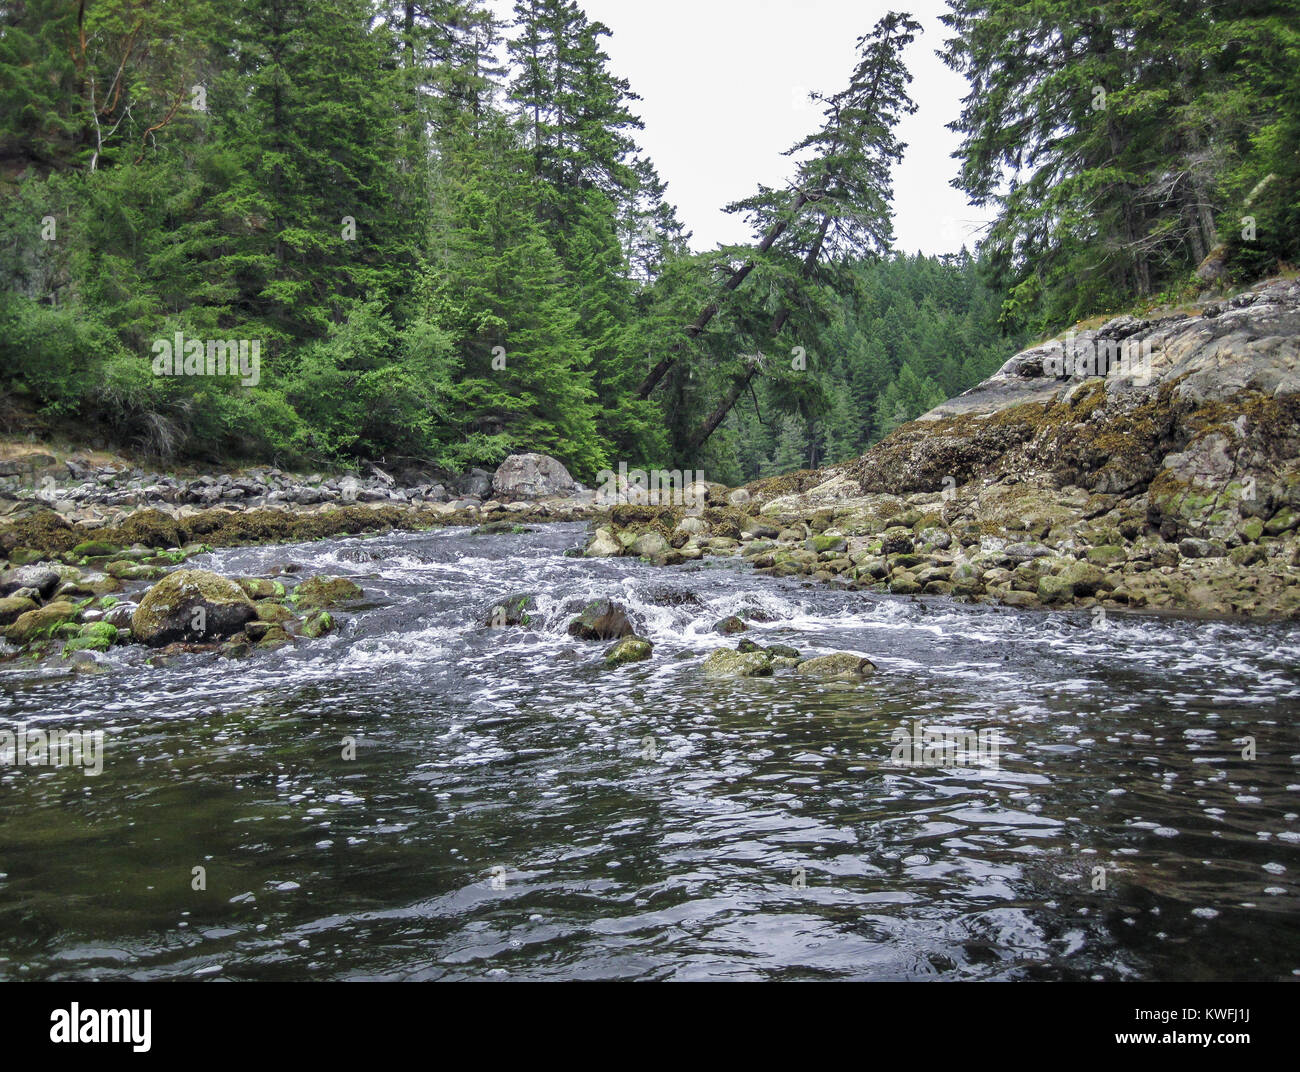 Con la bassa marea acqua precipita da una laguna di acqua salata, creando bolle a valle dell'entrata stretta. Ad alta marea il flusso inverte il senso di rotazione (British Columbia). Foto Stock